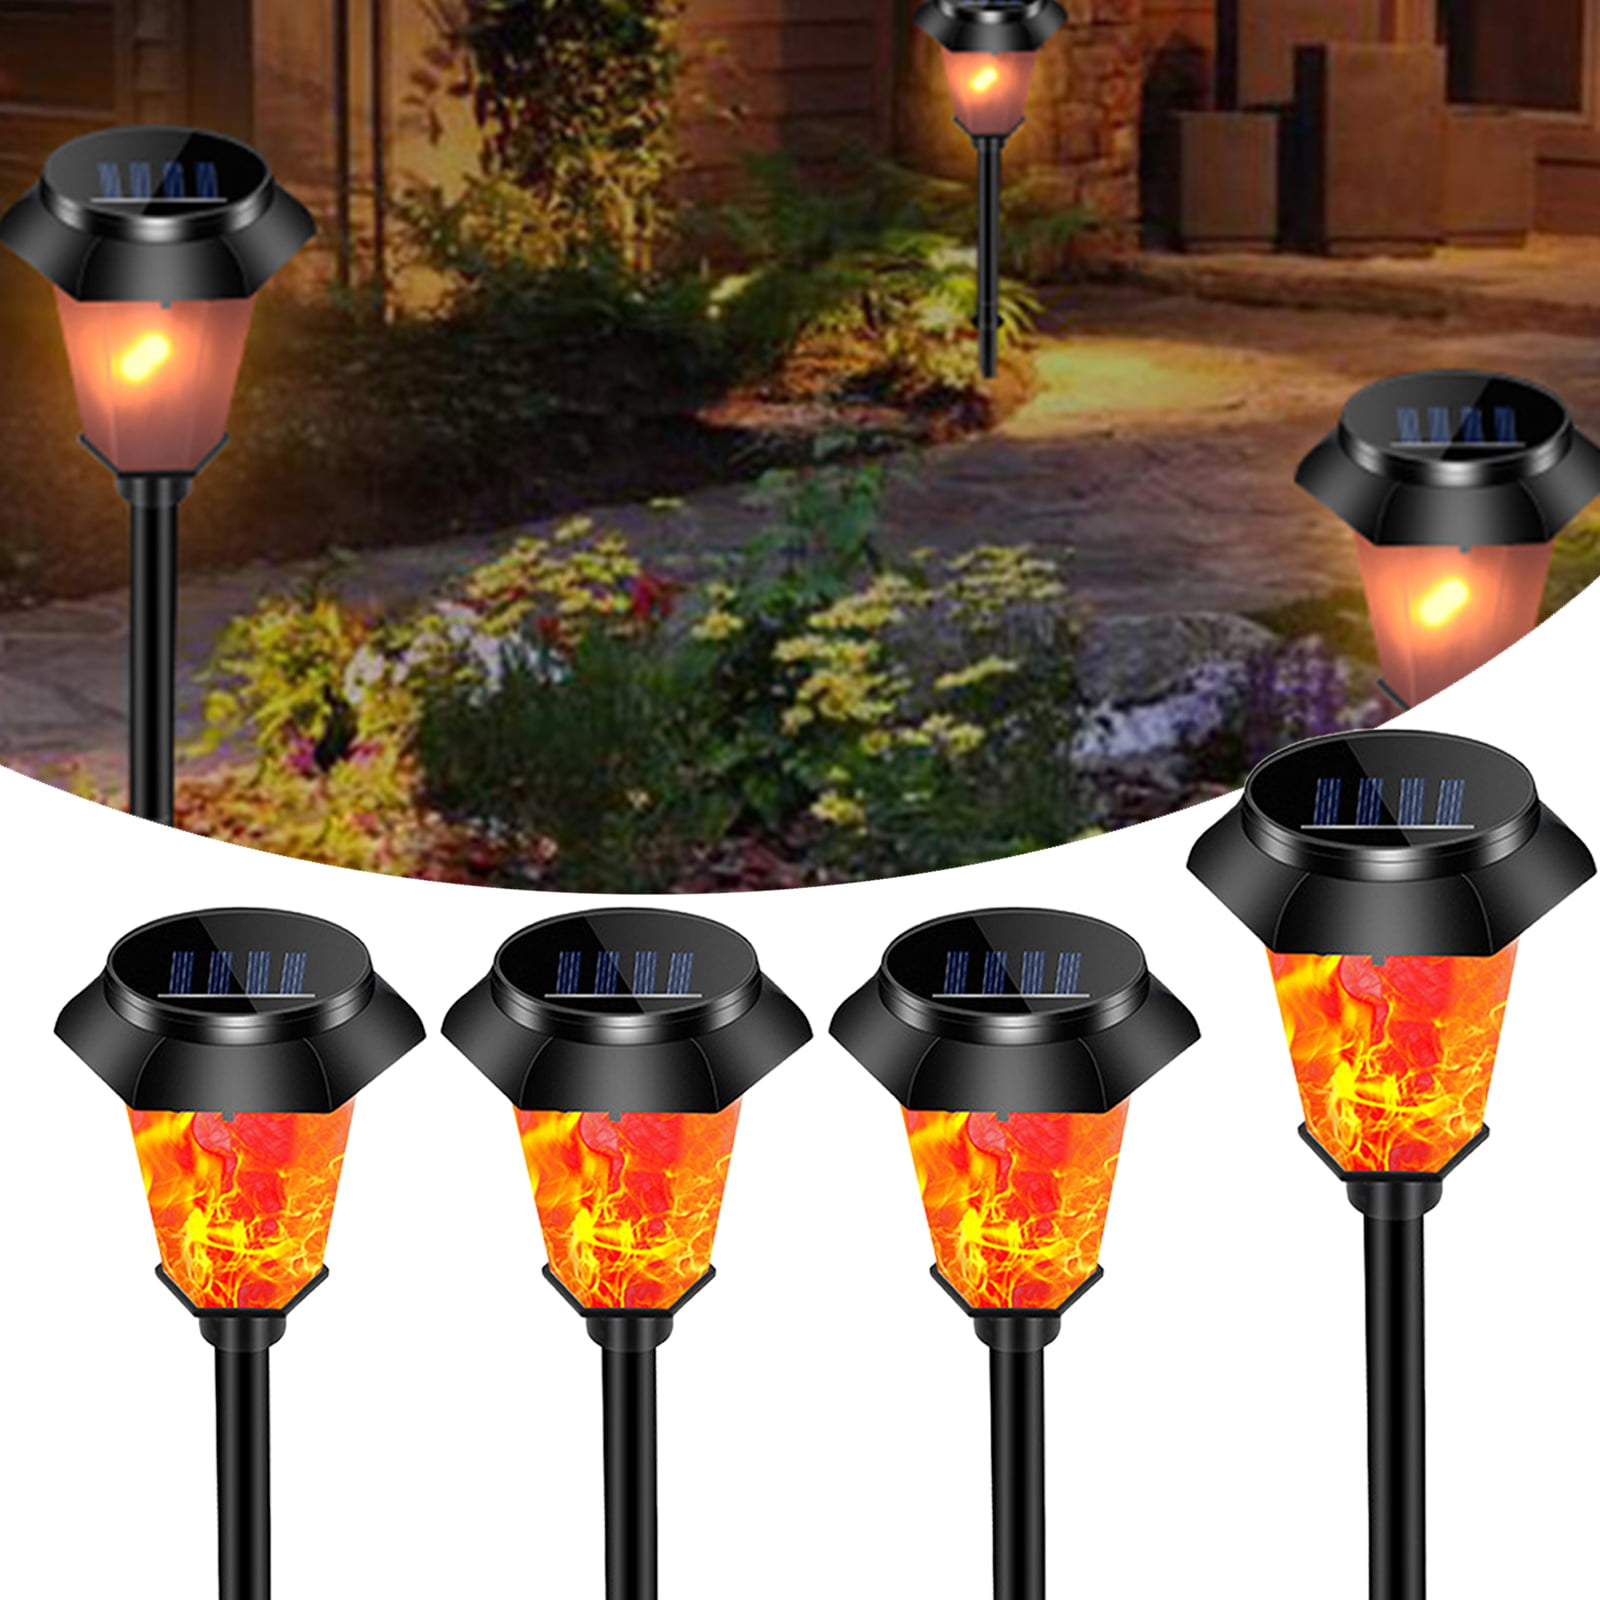 4x Outdoor 12LED Solar Torch Dance Flickering Flame Light Garden Waterproof Lamp 